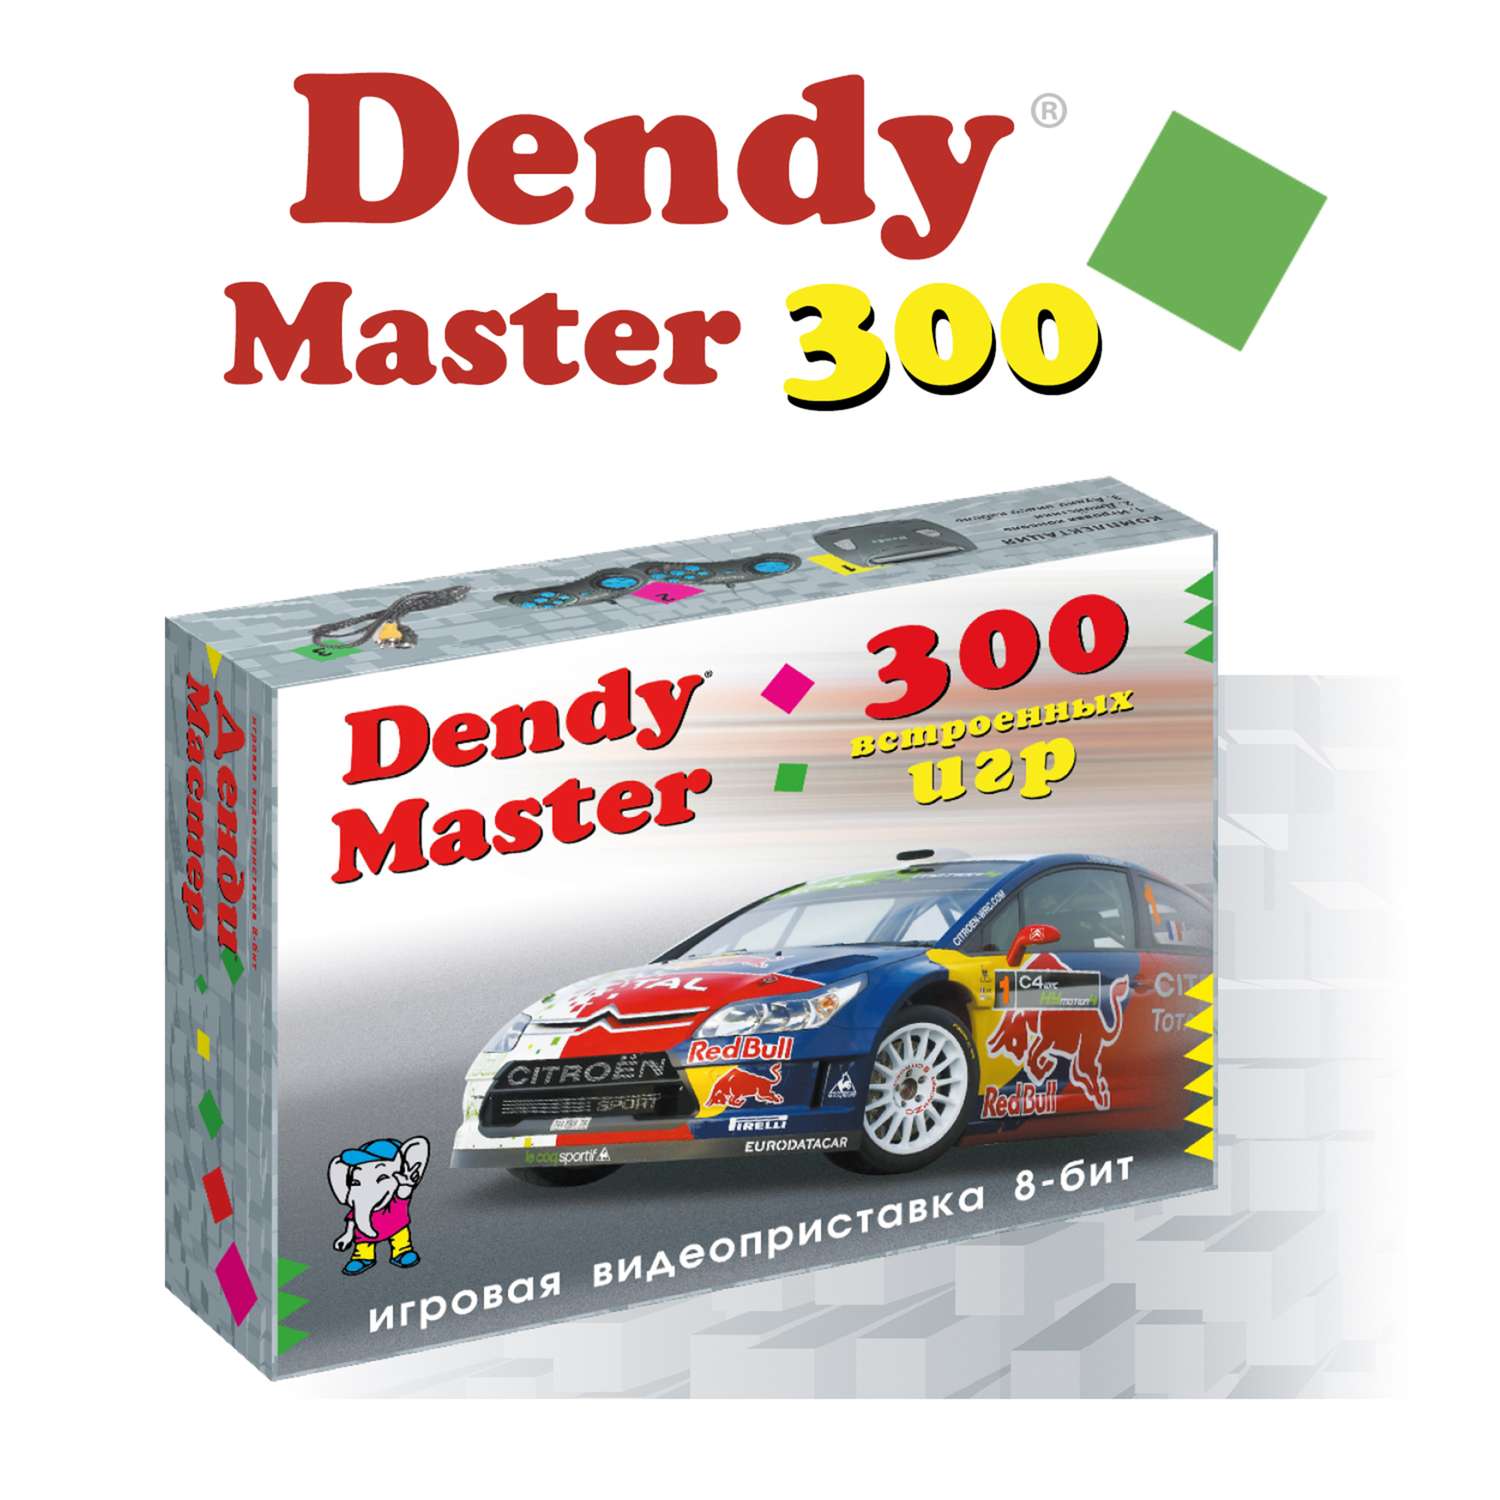 Игровая приставка Dendy Master 300 игр (8-бит) - фото 1